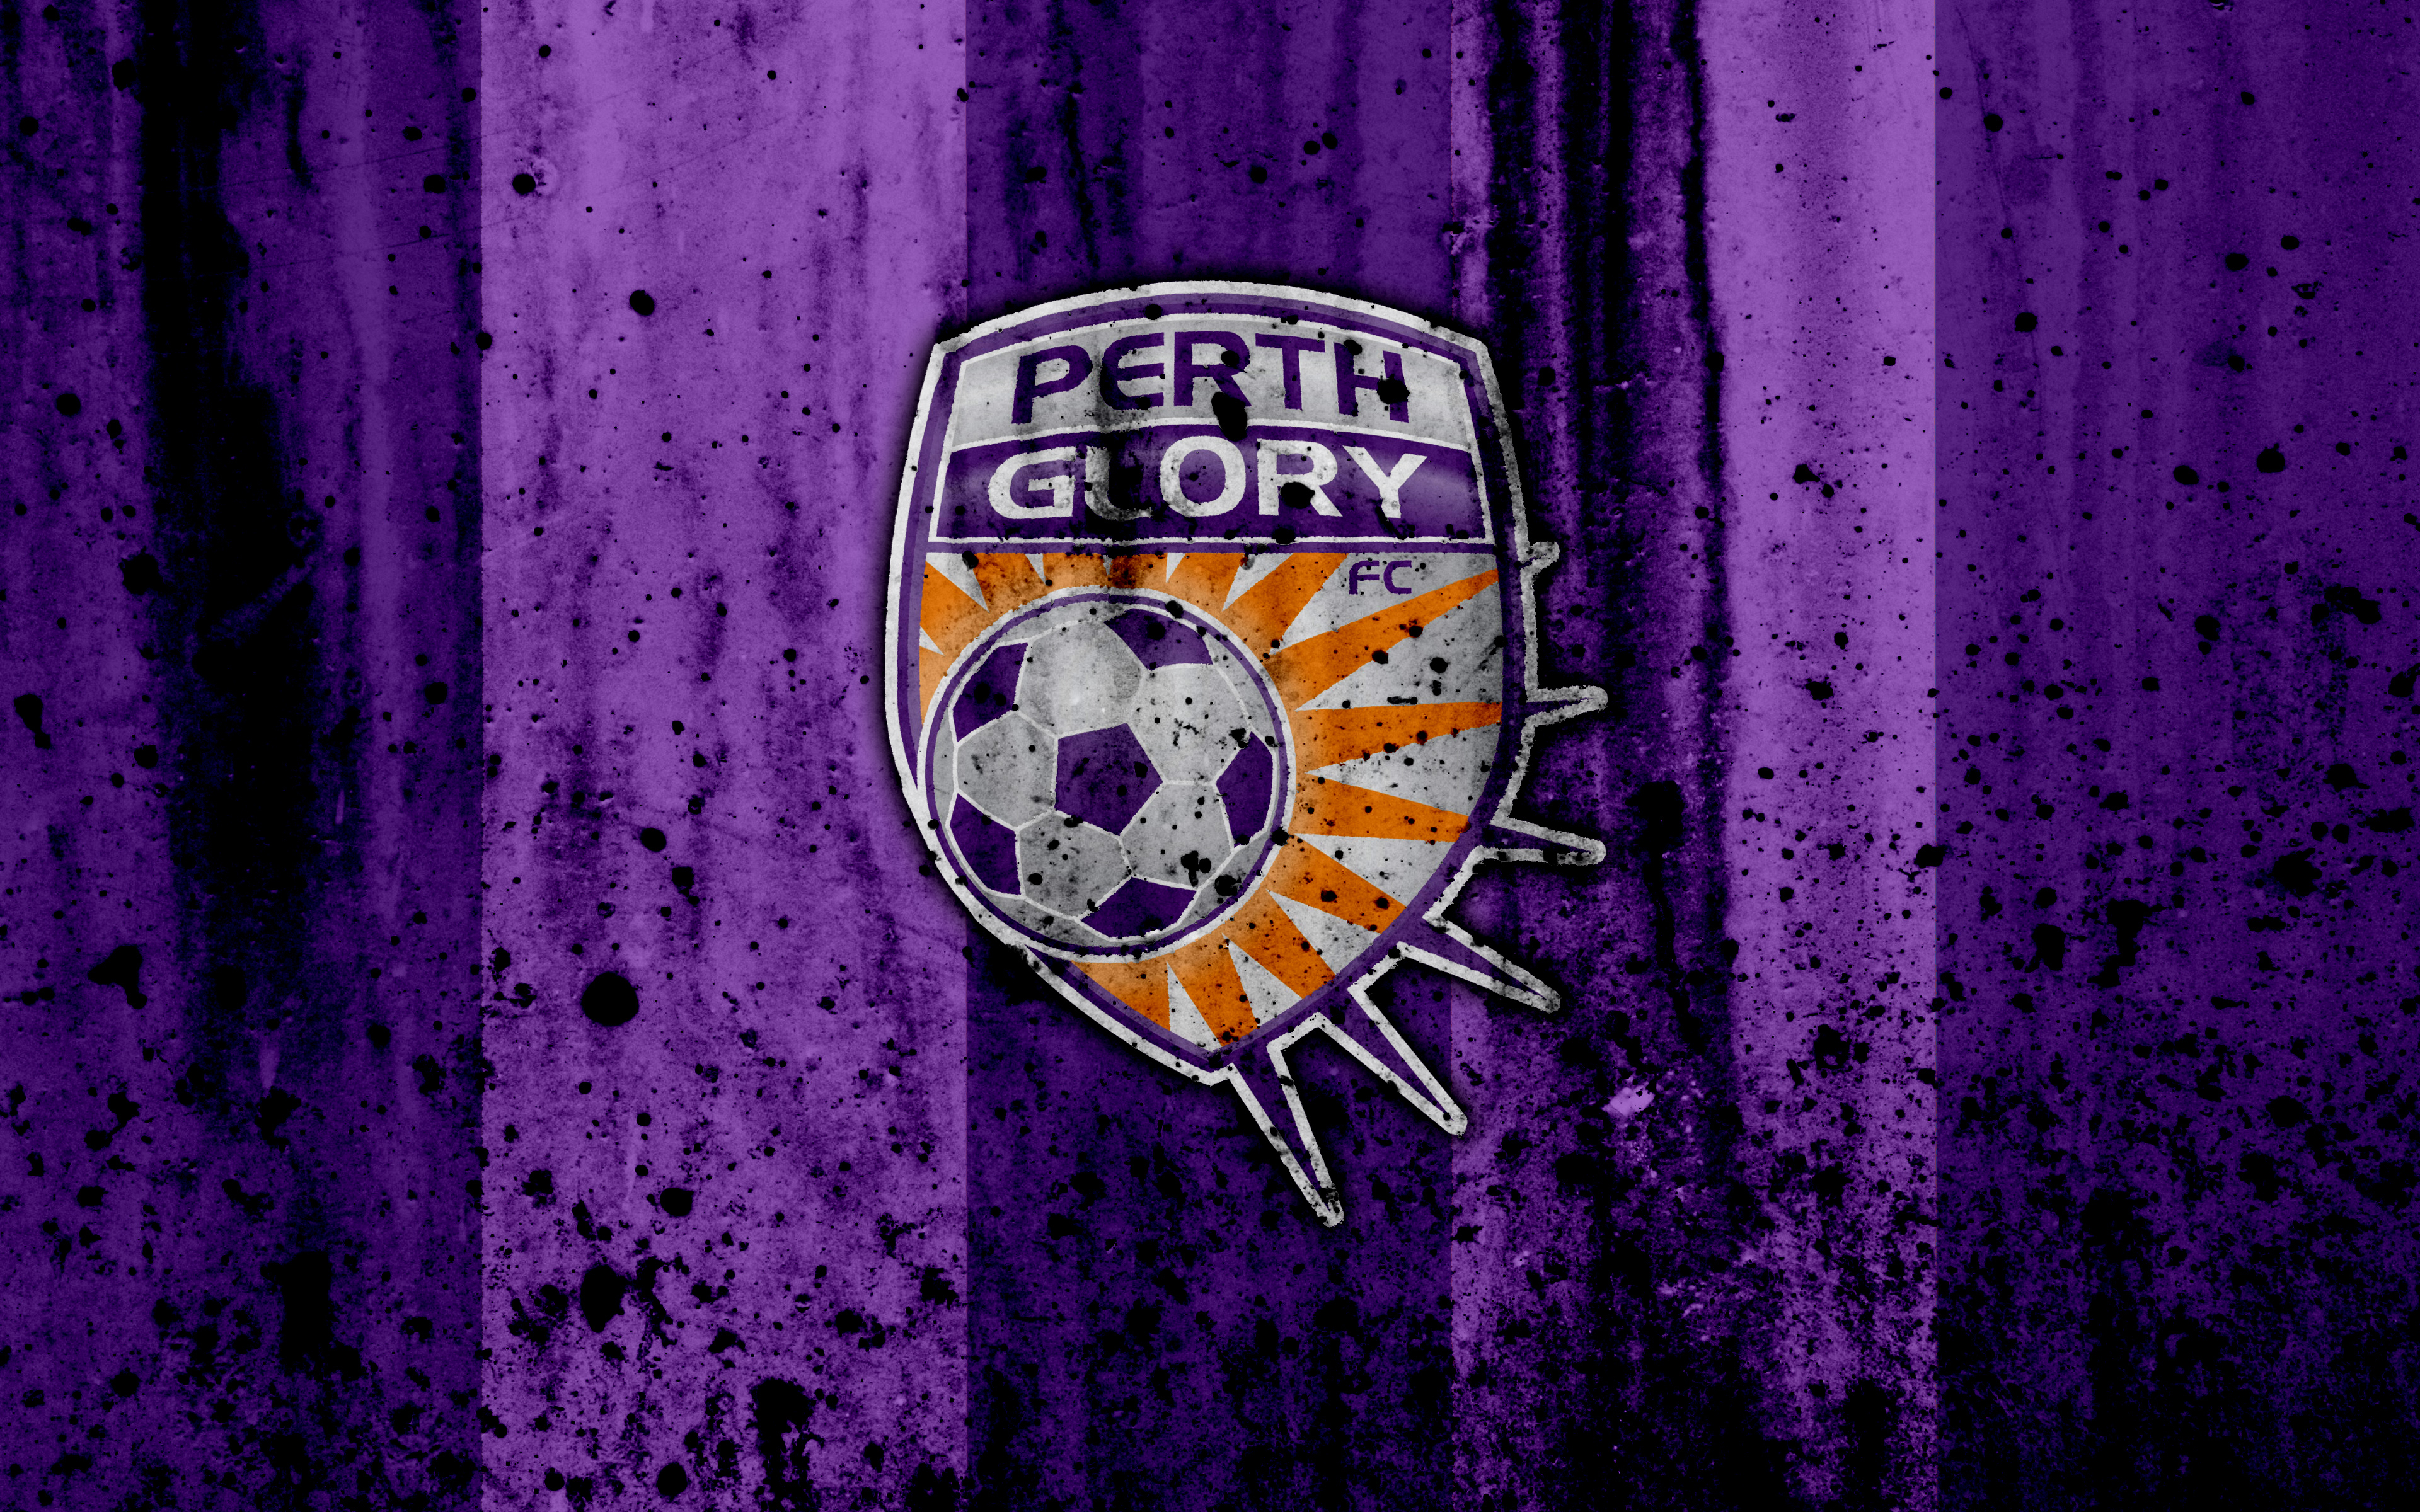 Perth glory fc